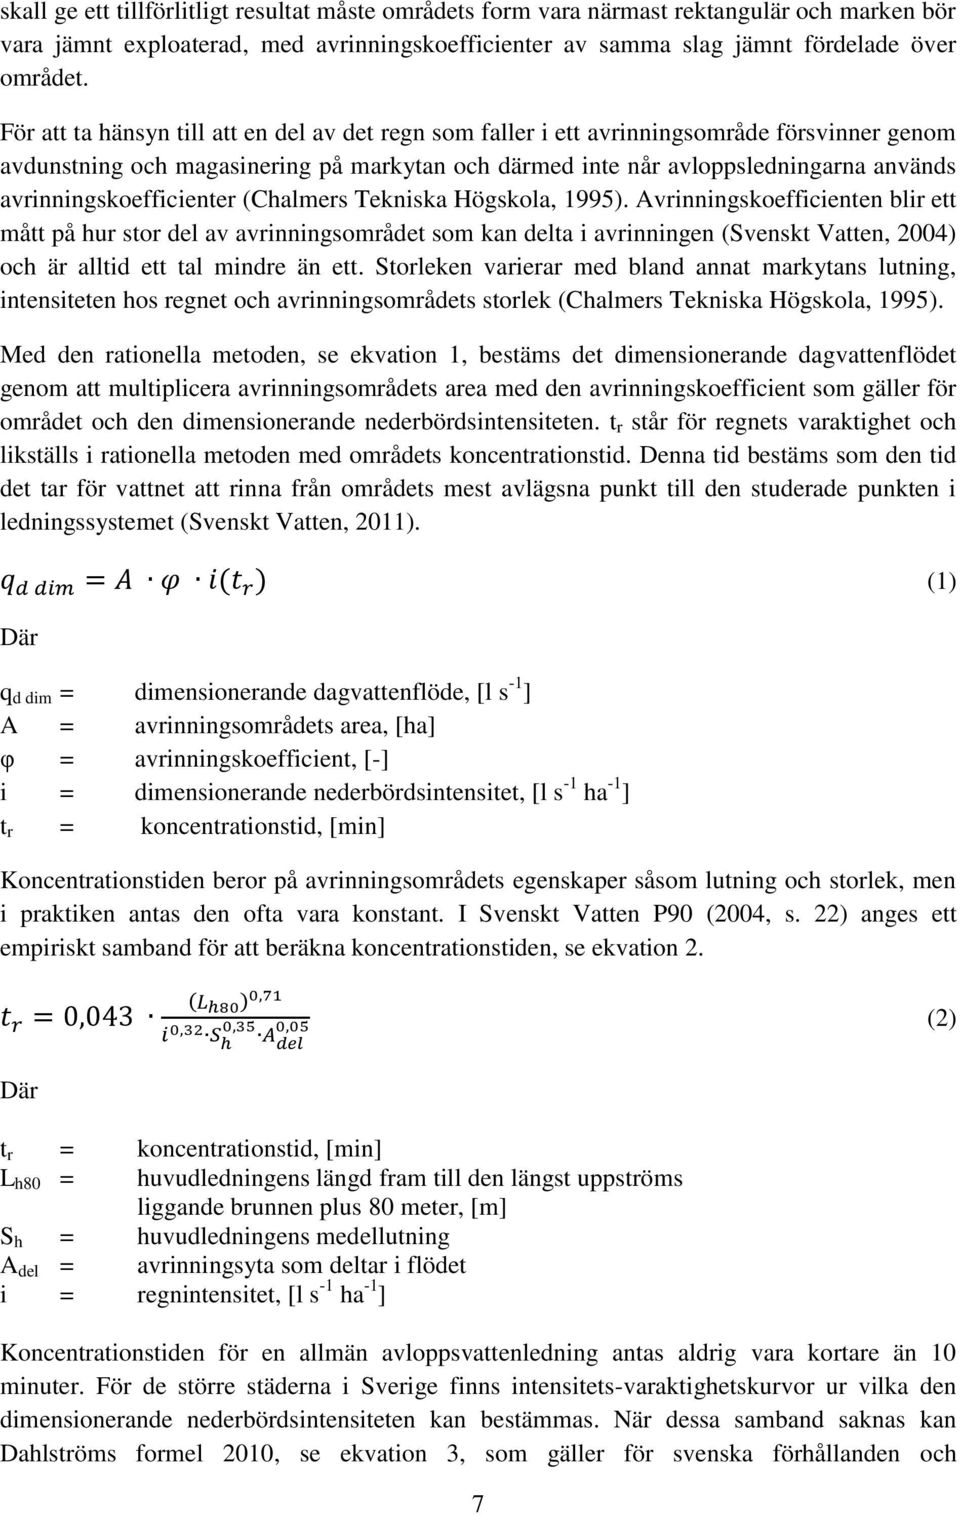 avrinningskoefficienter (Chalmers Tekniska Högskola, 1995).